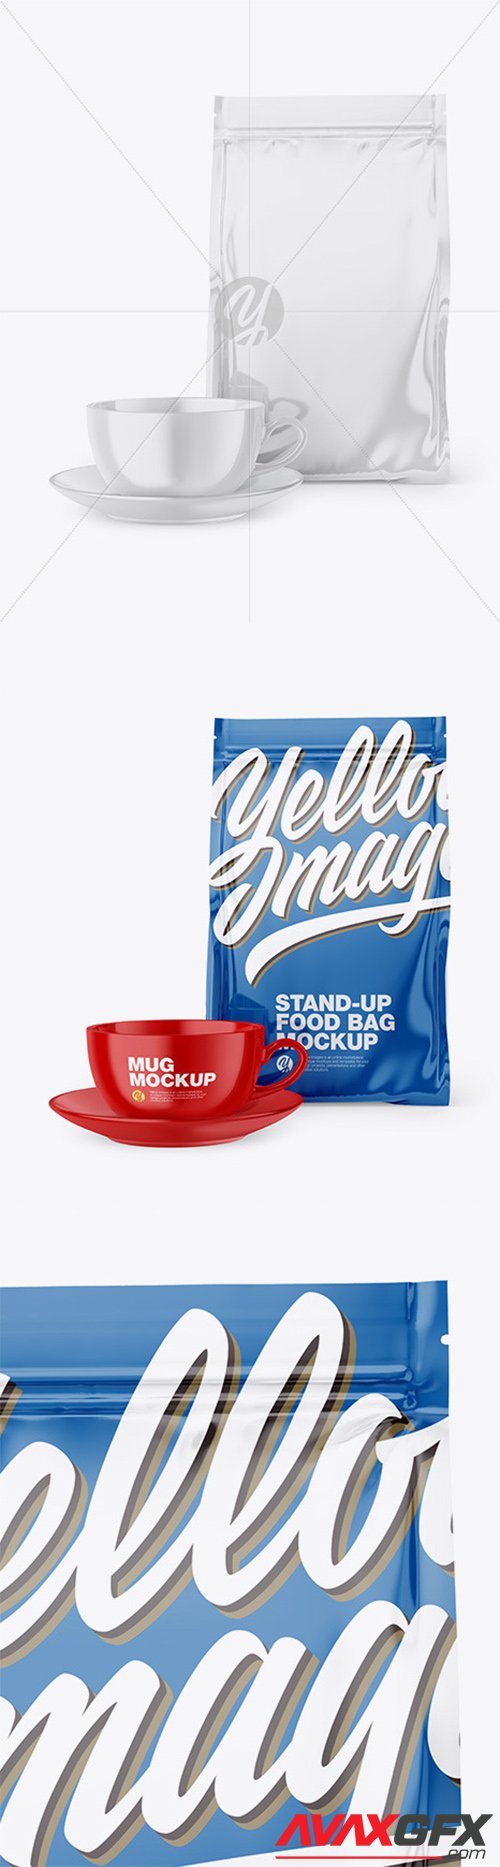 Glossy Stand-Up Bag with Coffee Mug Mockup 66632